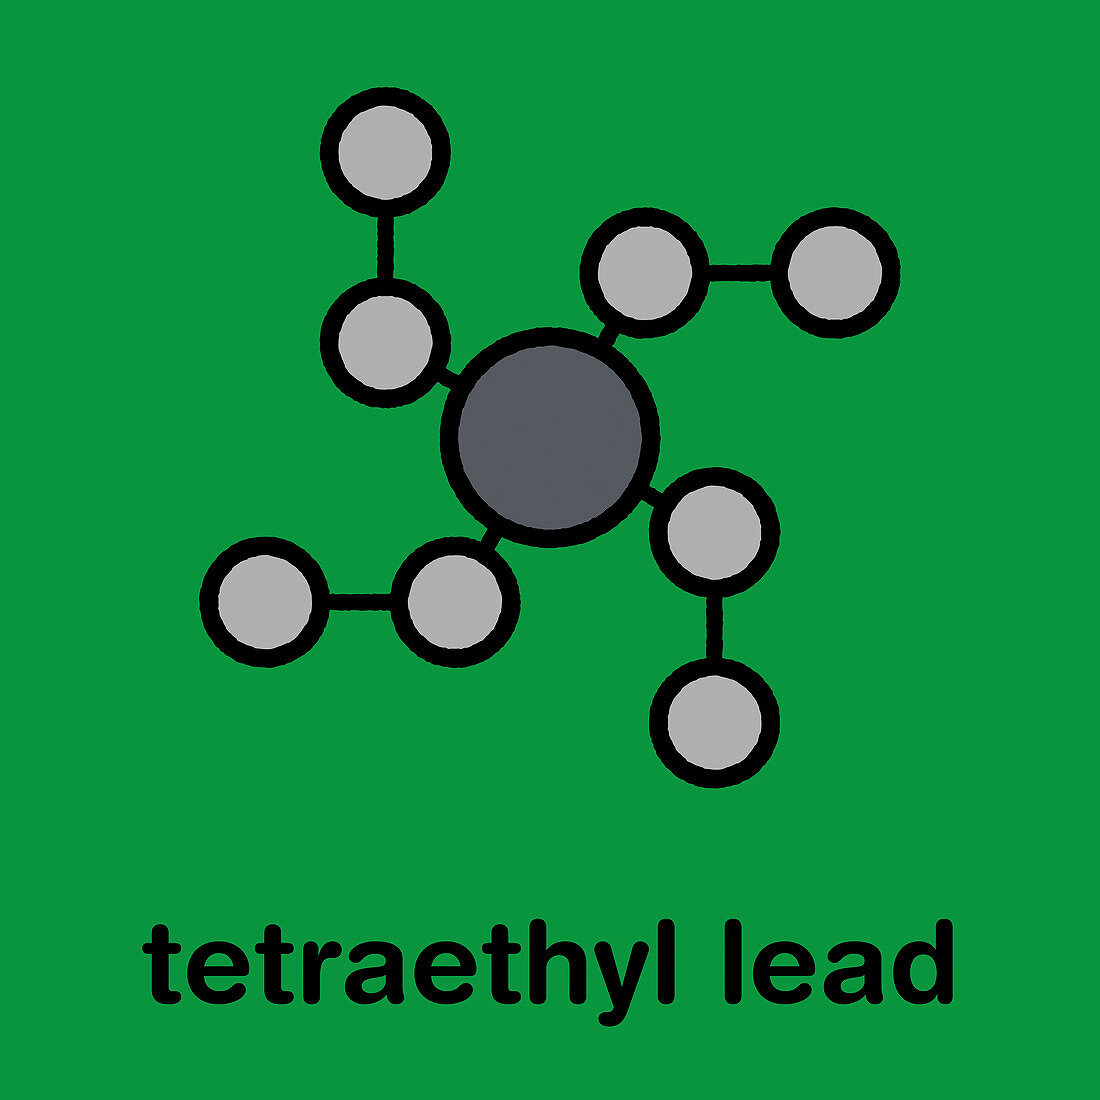 Tetraethyllead gasoline octane booster molecule